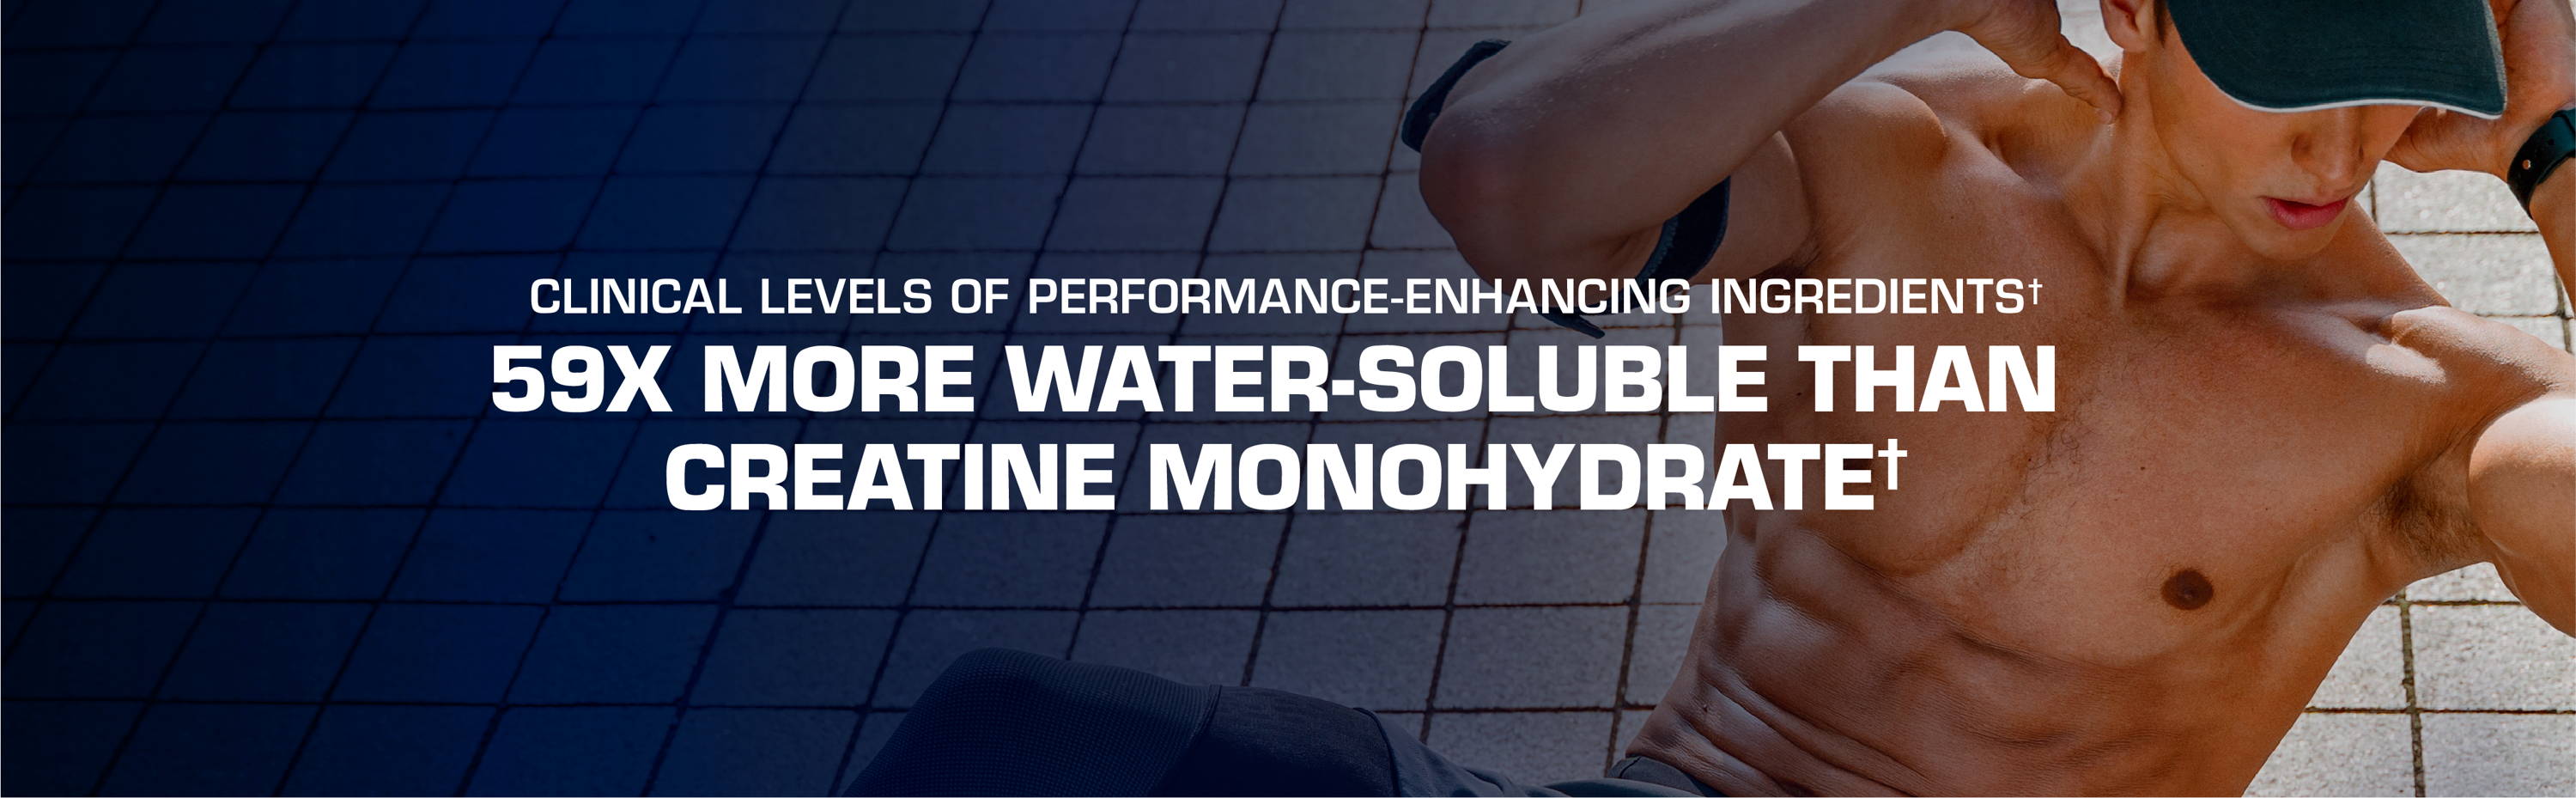 59 veces más soluble en agua que el monohidrato de creatina*